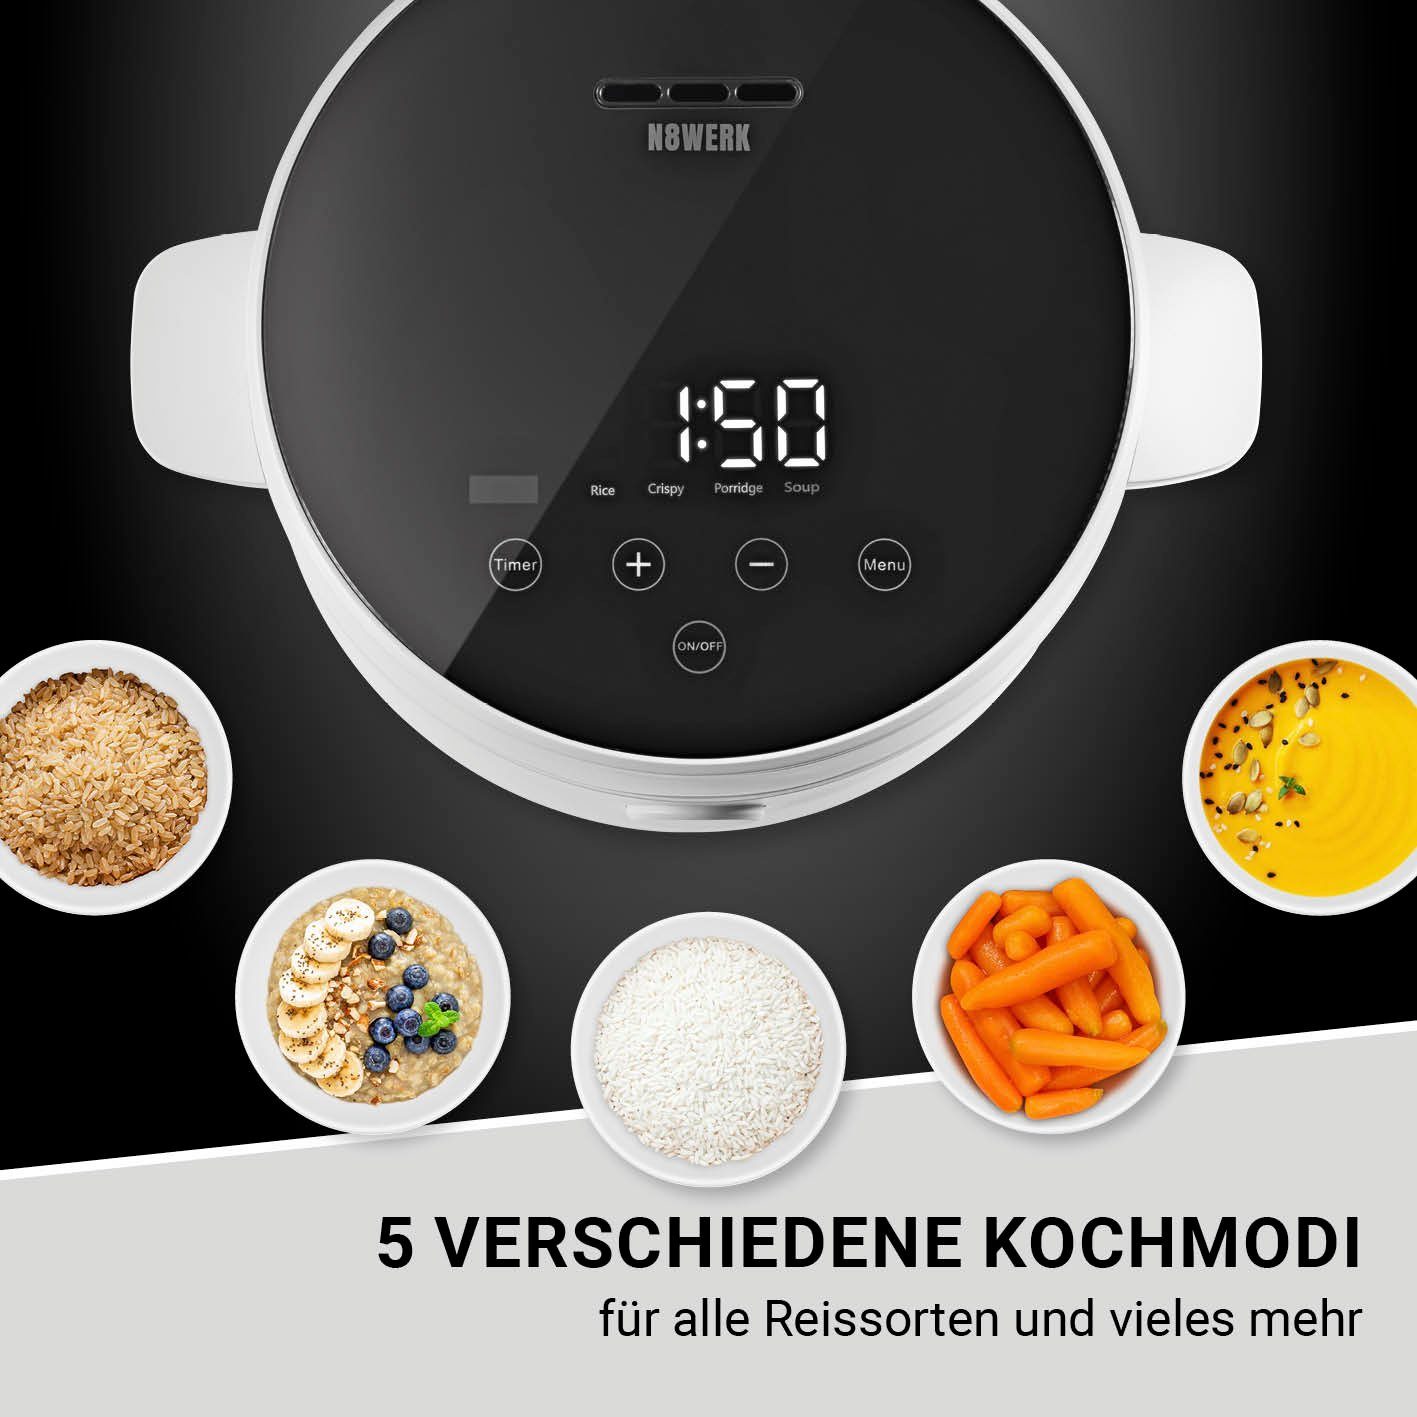 weiß N8WERK Digitaler Reiskocher - Reiskocher